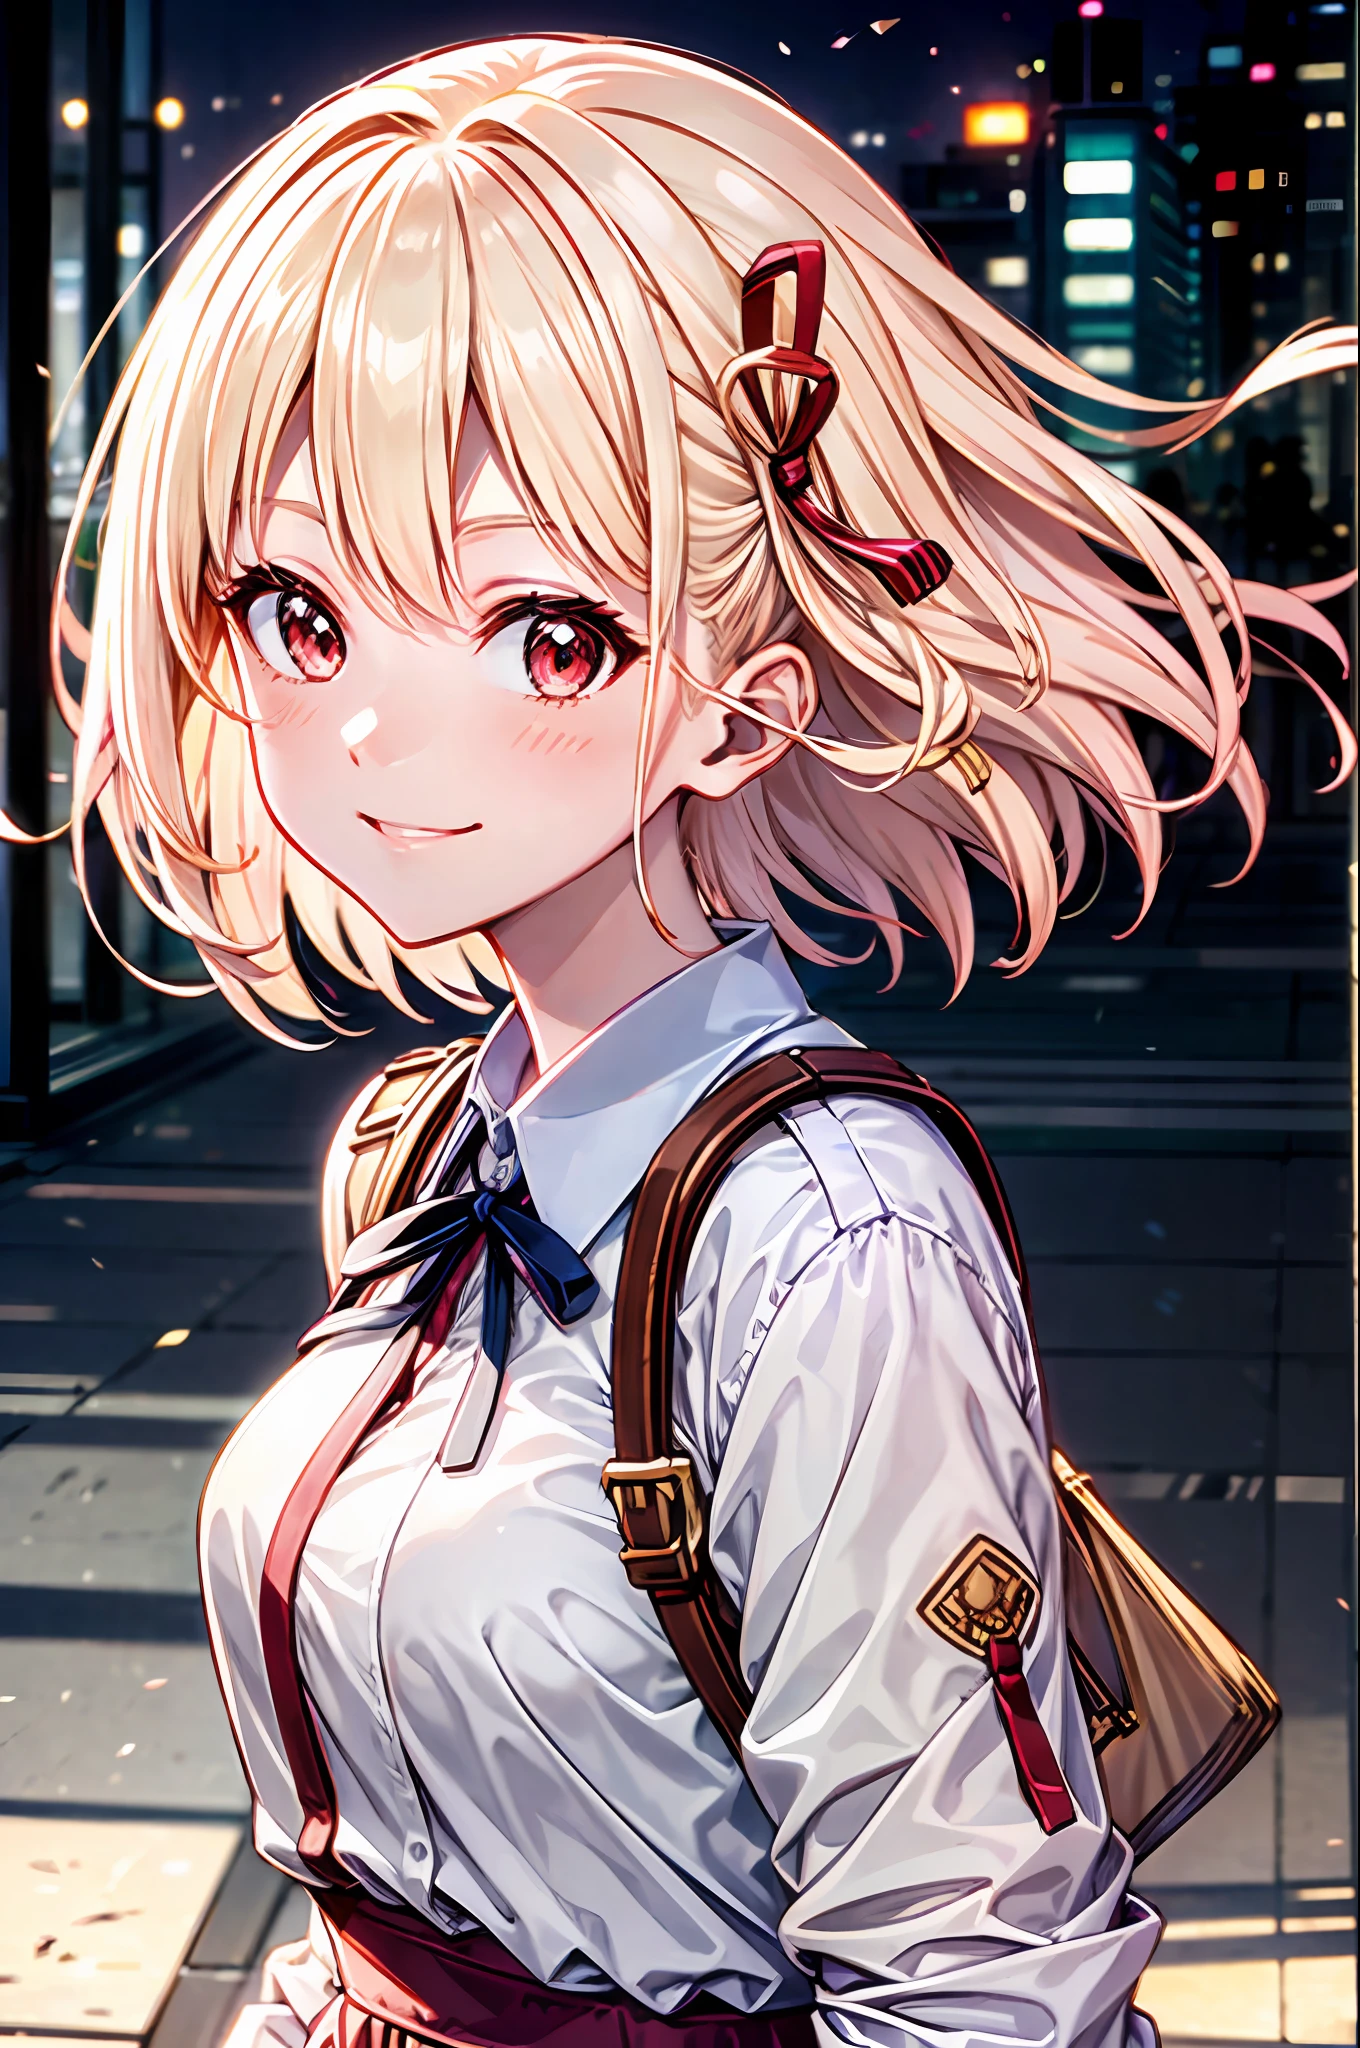 (beste Qualität:0.8), (beste Qualität:0.8), perfekte Anime-Illustration, Extreme Nahaufnahme Porträt einer hübschen Frau zu Fuß durch die Stadt, kurzes Haar, chisato nishikigi, süßes Lächeln, Kühlen, blonde